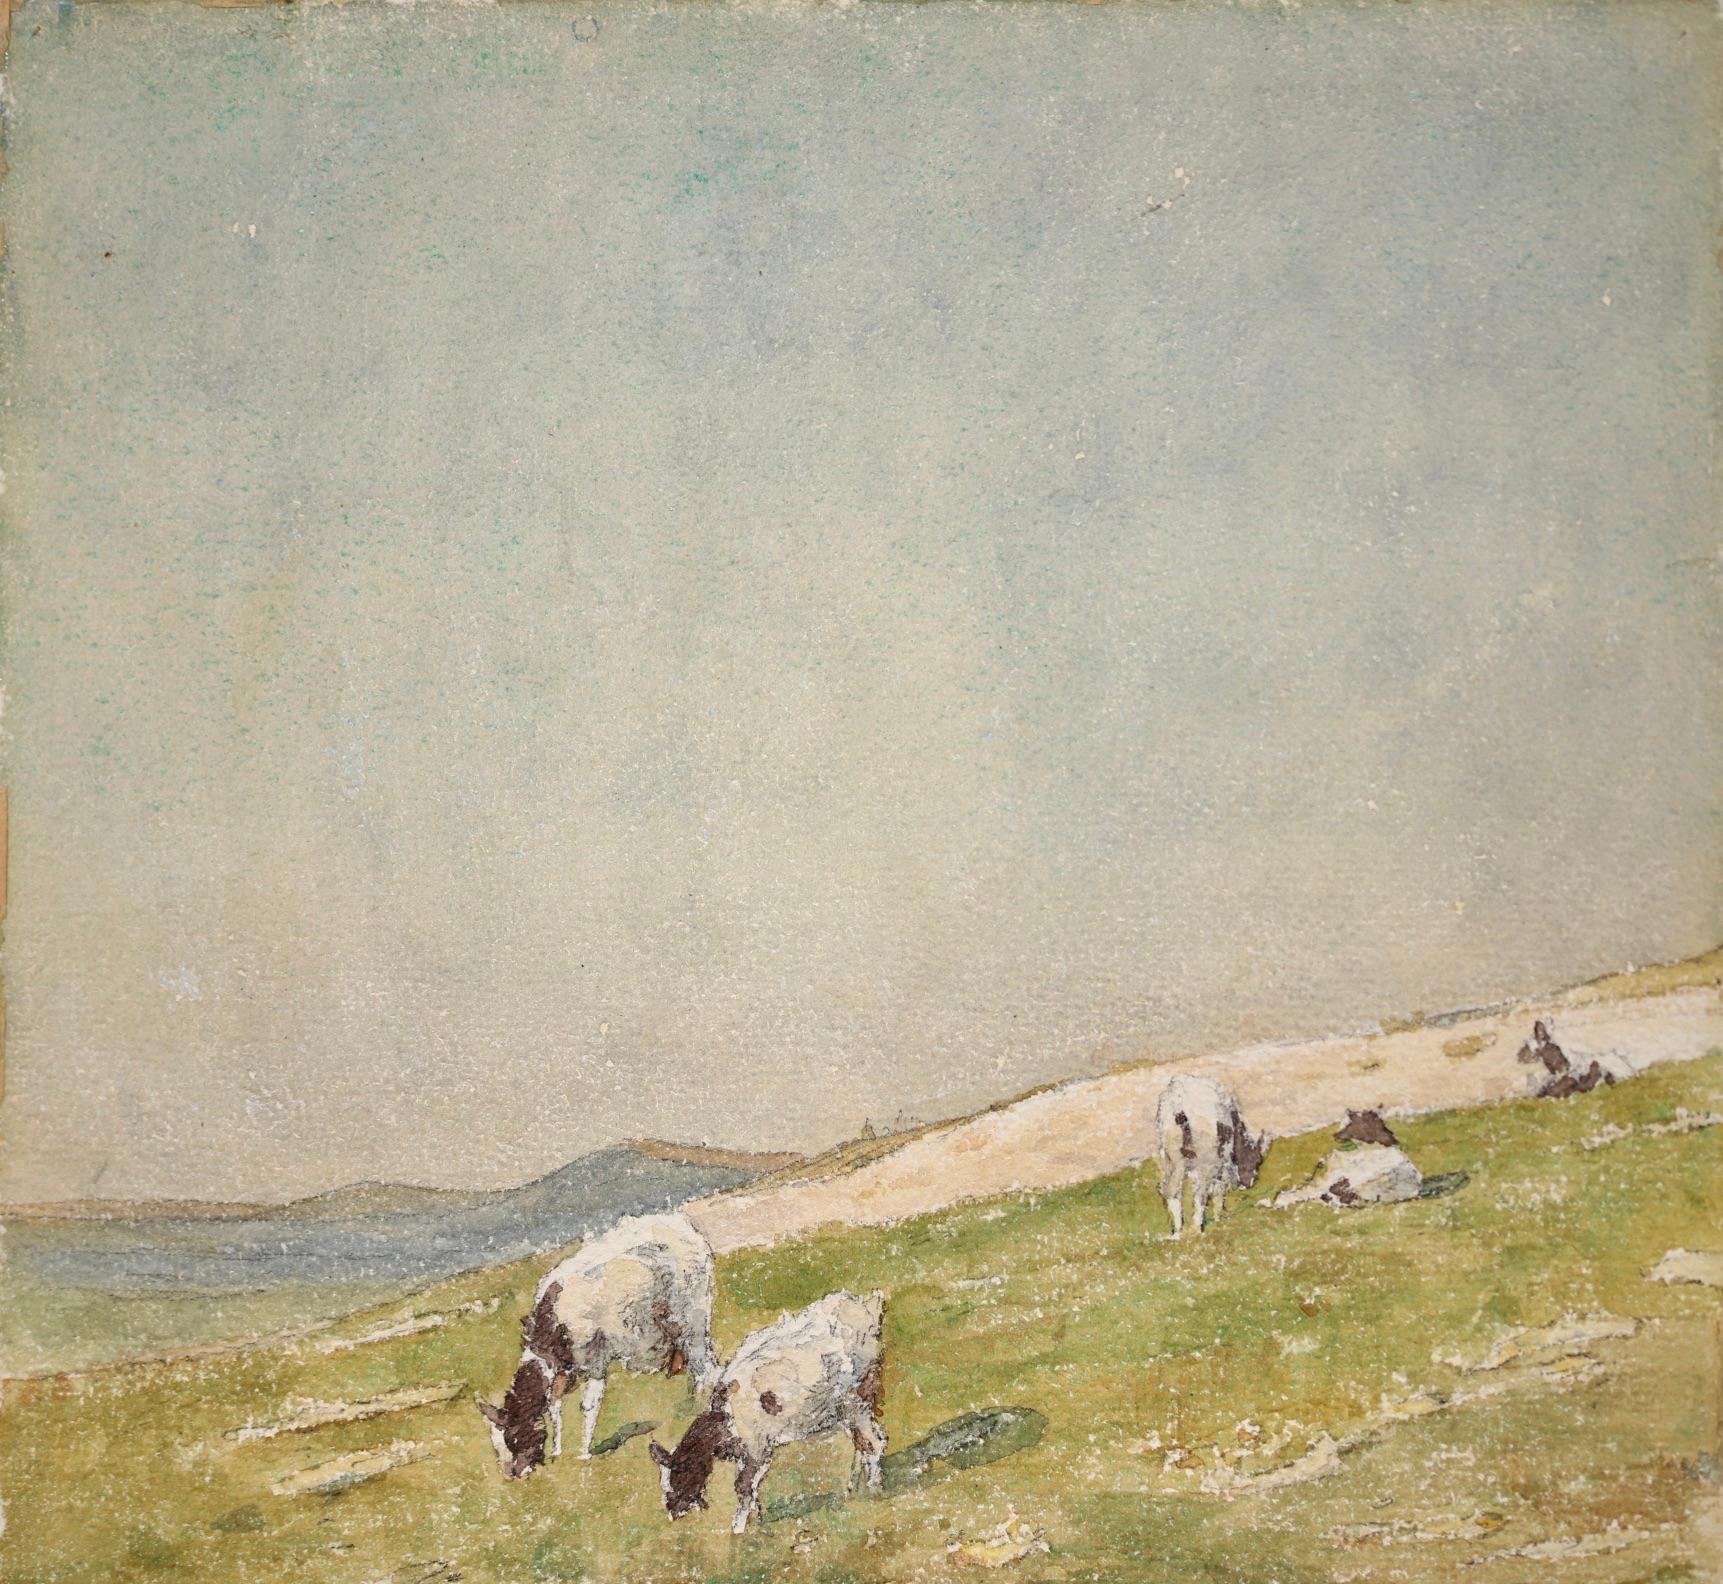 Vaches dans le paysage - Impressionist Watercolor, Cows in Landscape by H Duhem 1